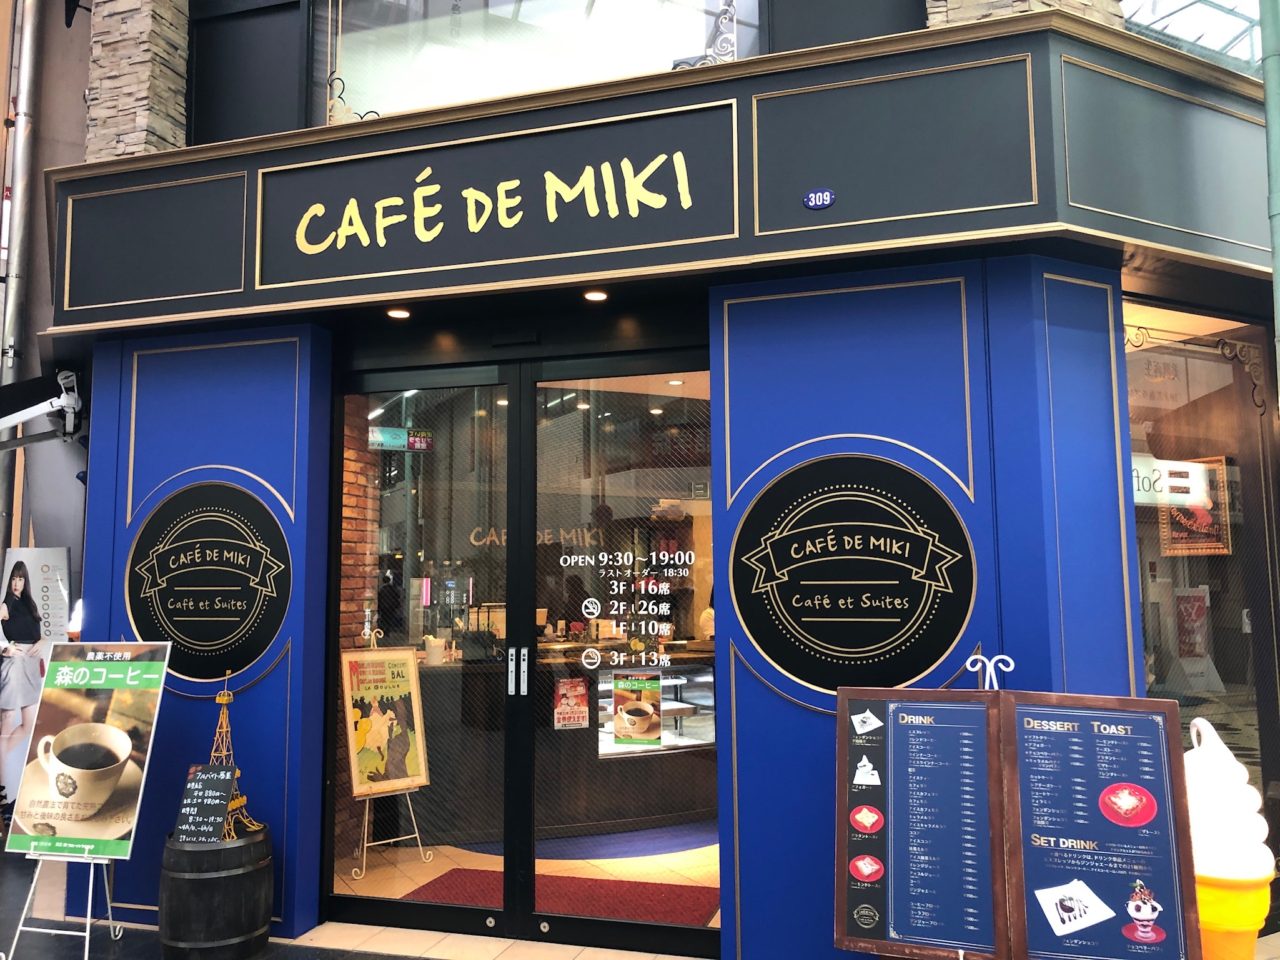 メガネの三城 のカフェ 姫路駅から徒歩5分 みゆき通りの中のカフェドミキでホットドッグのセットを食べた あんかけ姫路